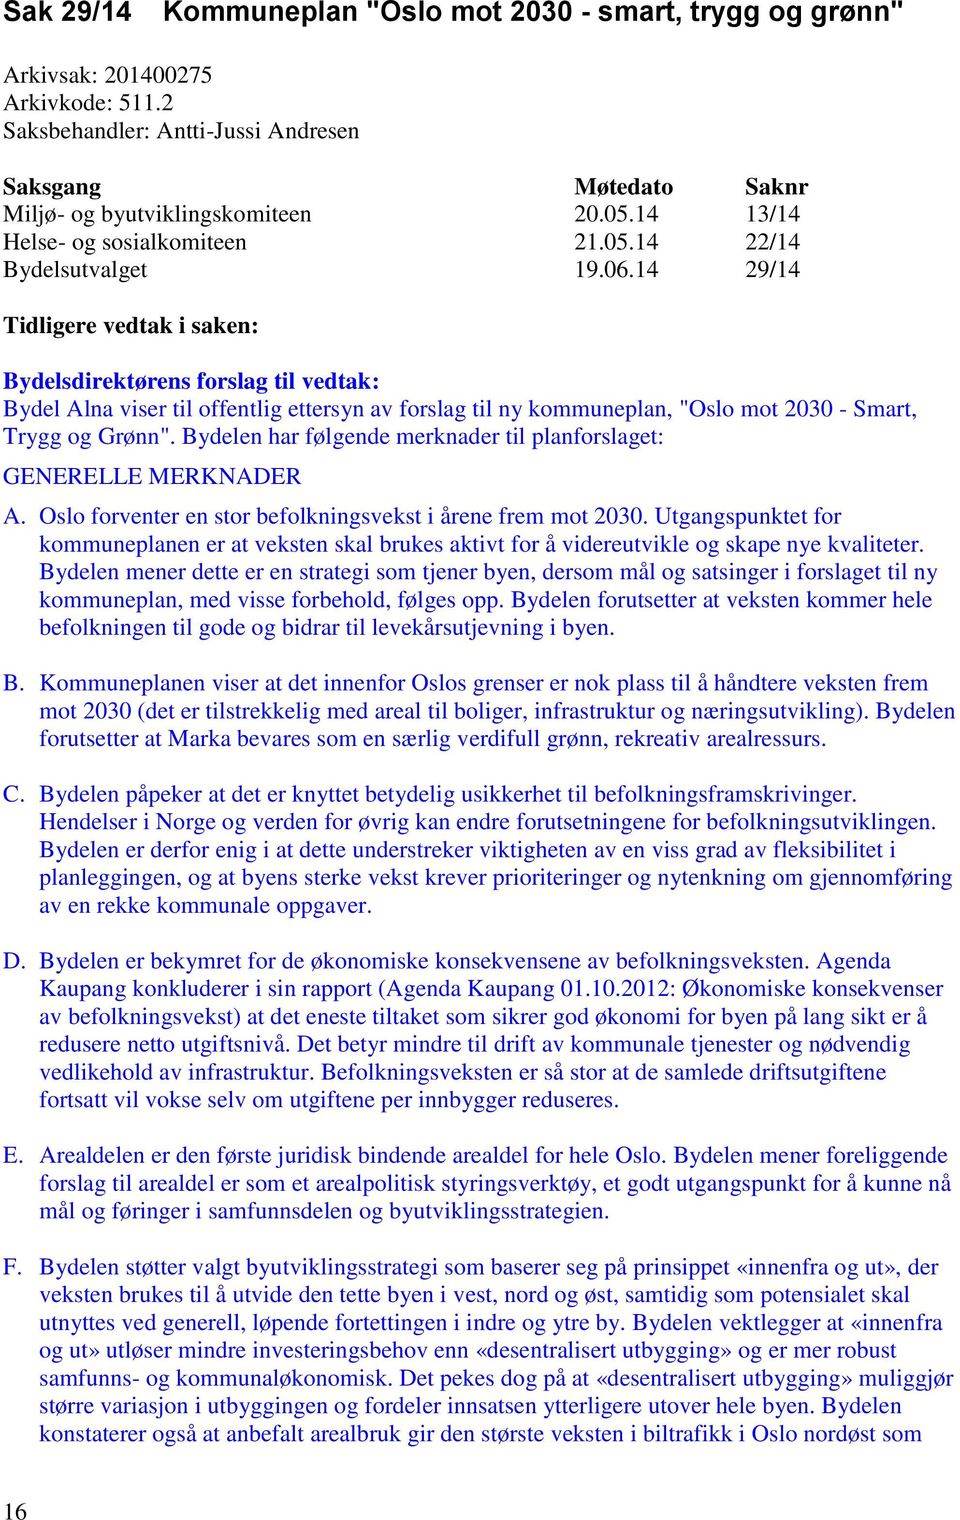 14 29/14 Tidligere vedtak i saken: Bydelsdirektørens forslag til vedtak: Bydel Alna viser til offentlig ettersyn av forslag til ny kommuneplan, "Oslo mot 2030 - Smart, Trygg og Grønn".